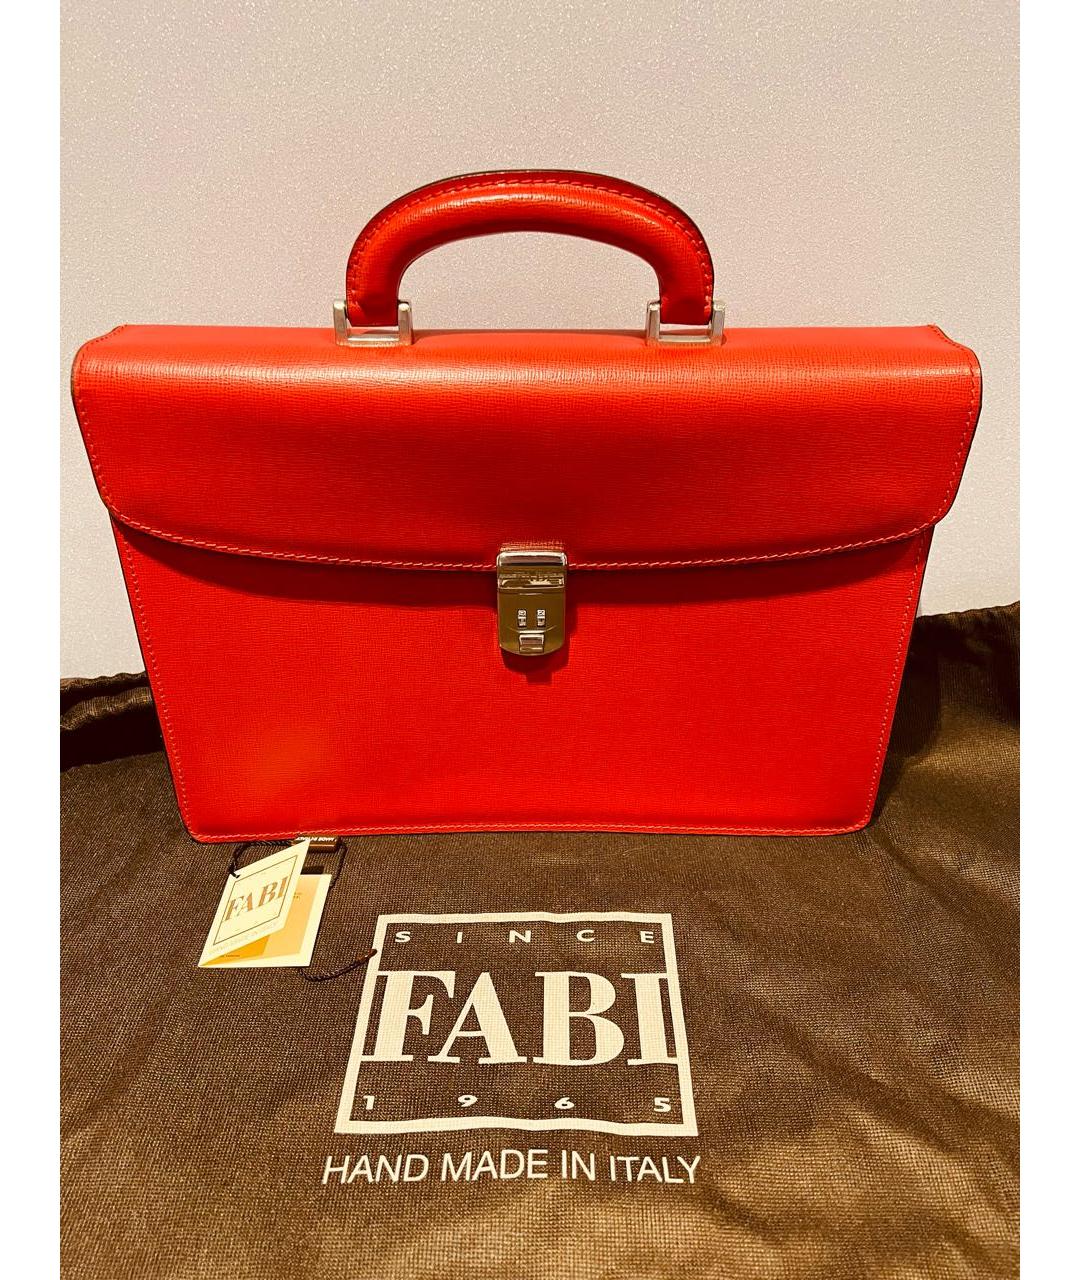 FABI Красная кожаная сумка с короткими ручками, фото 2